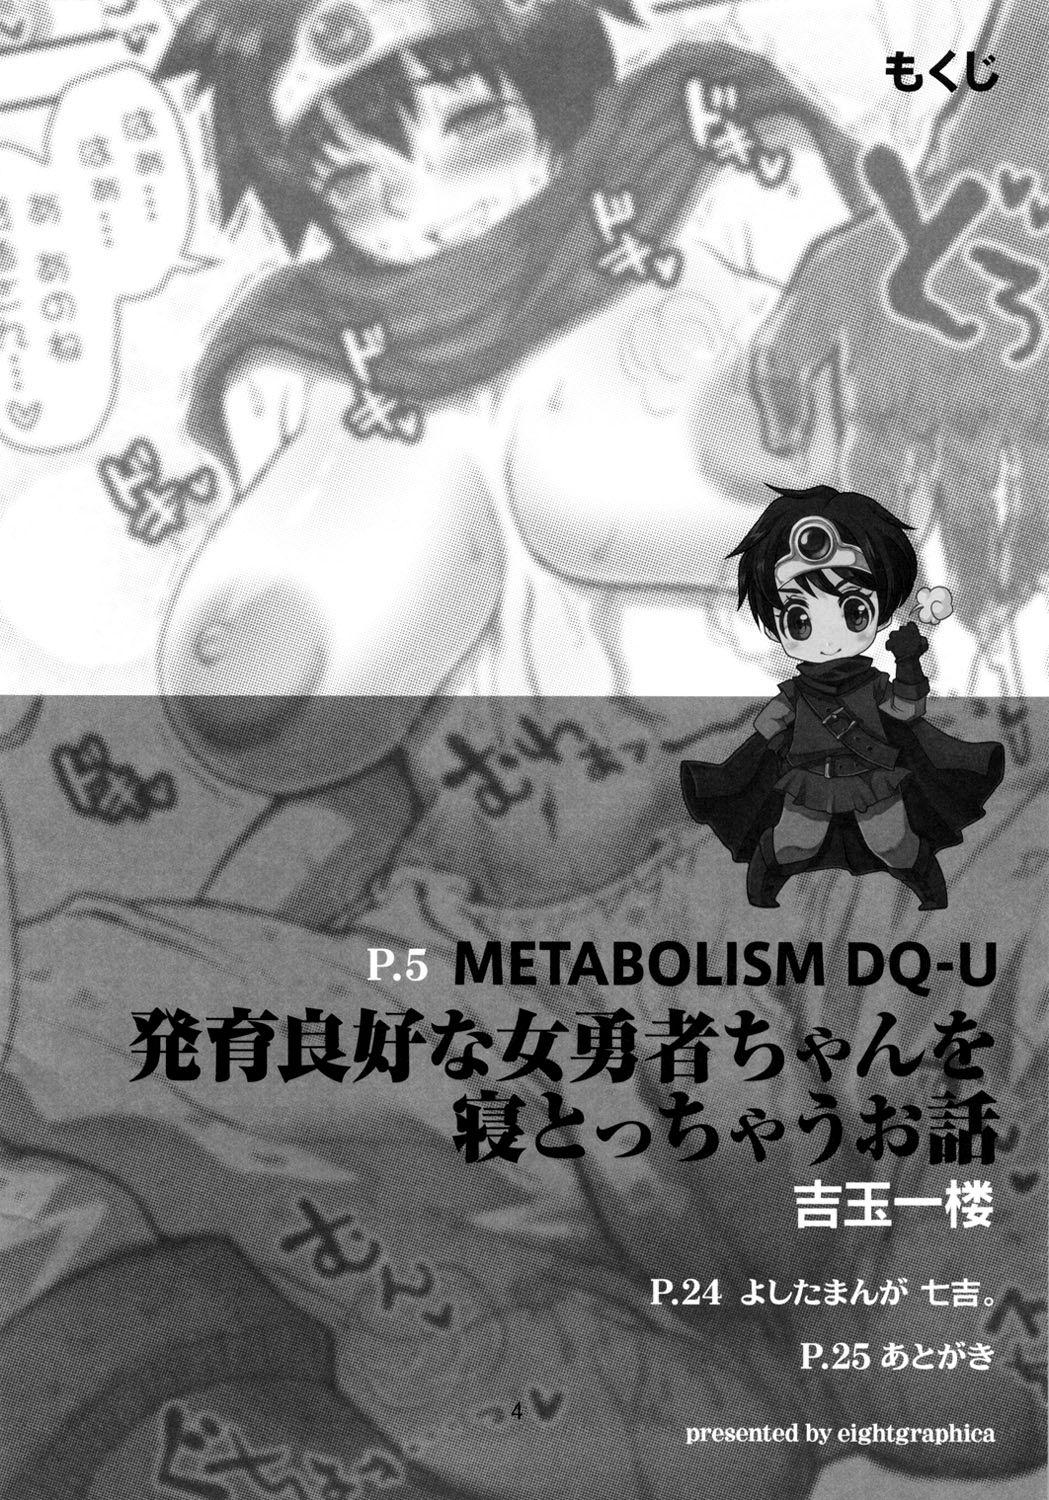 Real Amateurs Metabolism DQ-U Hatsuiku Ryoukou na Onna Yuusha wo Netocchau Ohanashi. - Dragon quest iii Amateur - Page 3